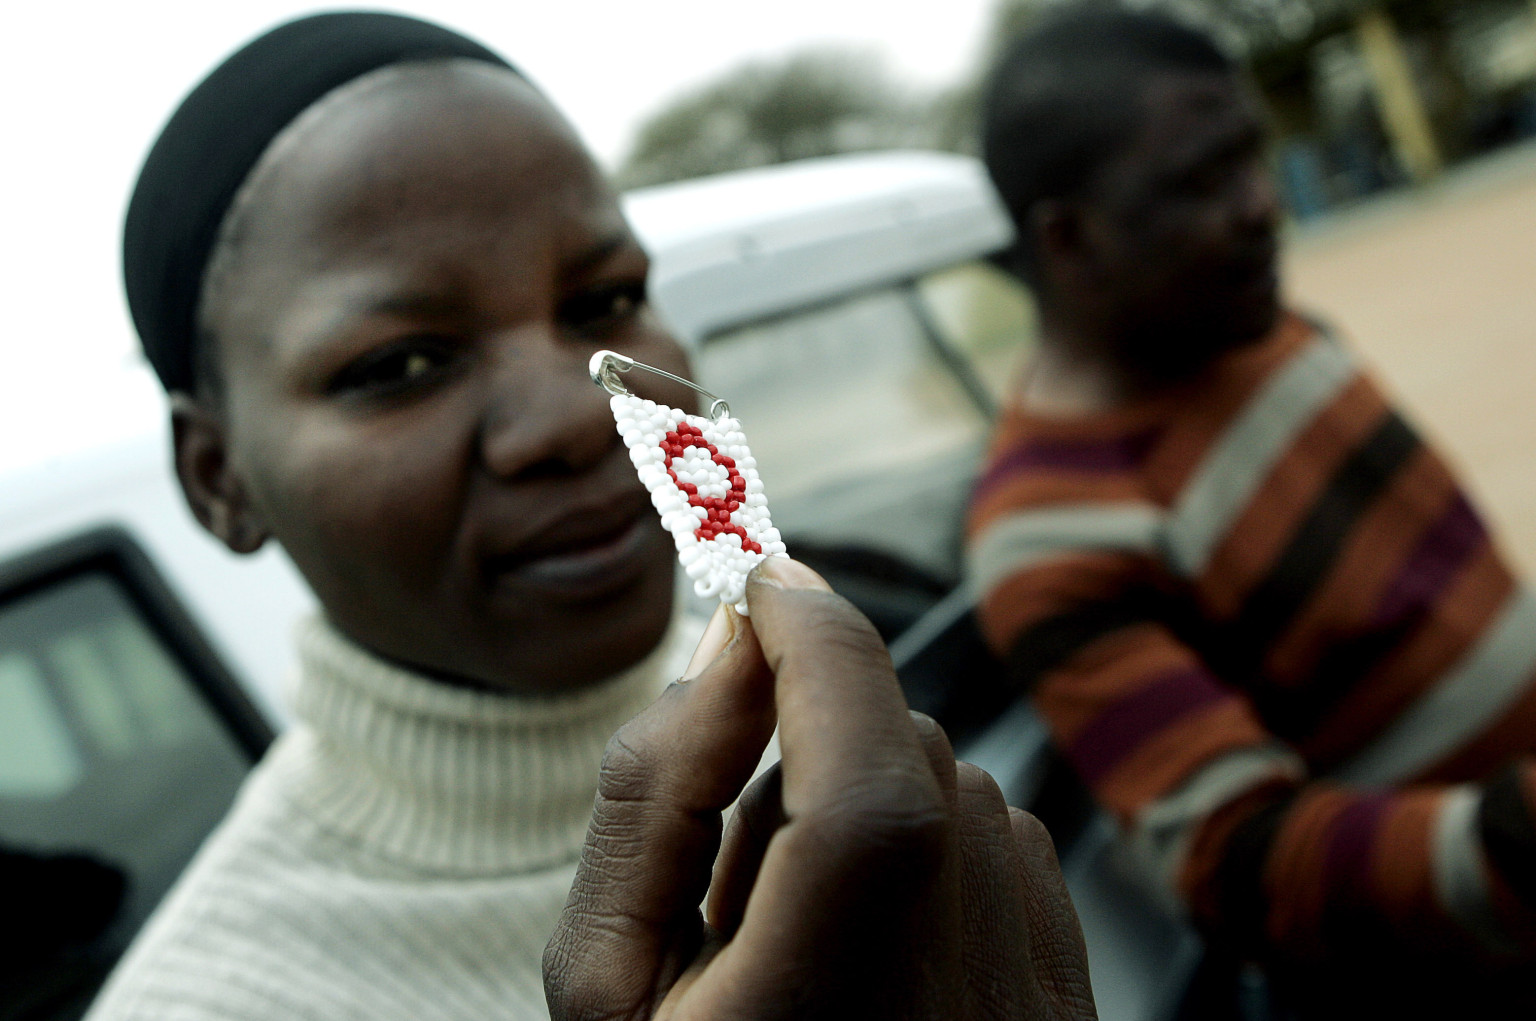 استراتژی جنگی؛مبتلا کردن زنان به ایدز